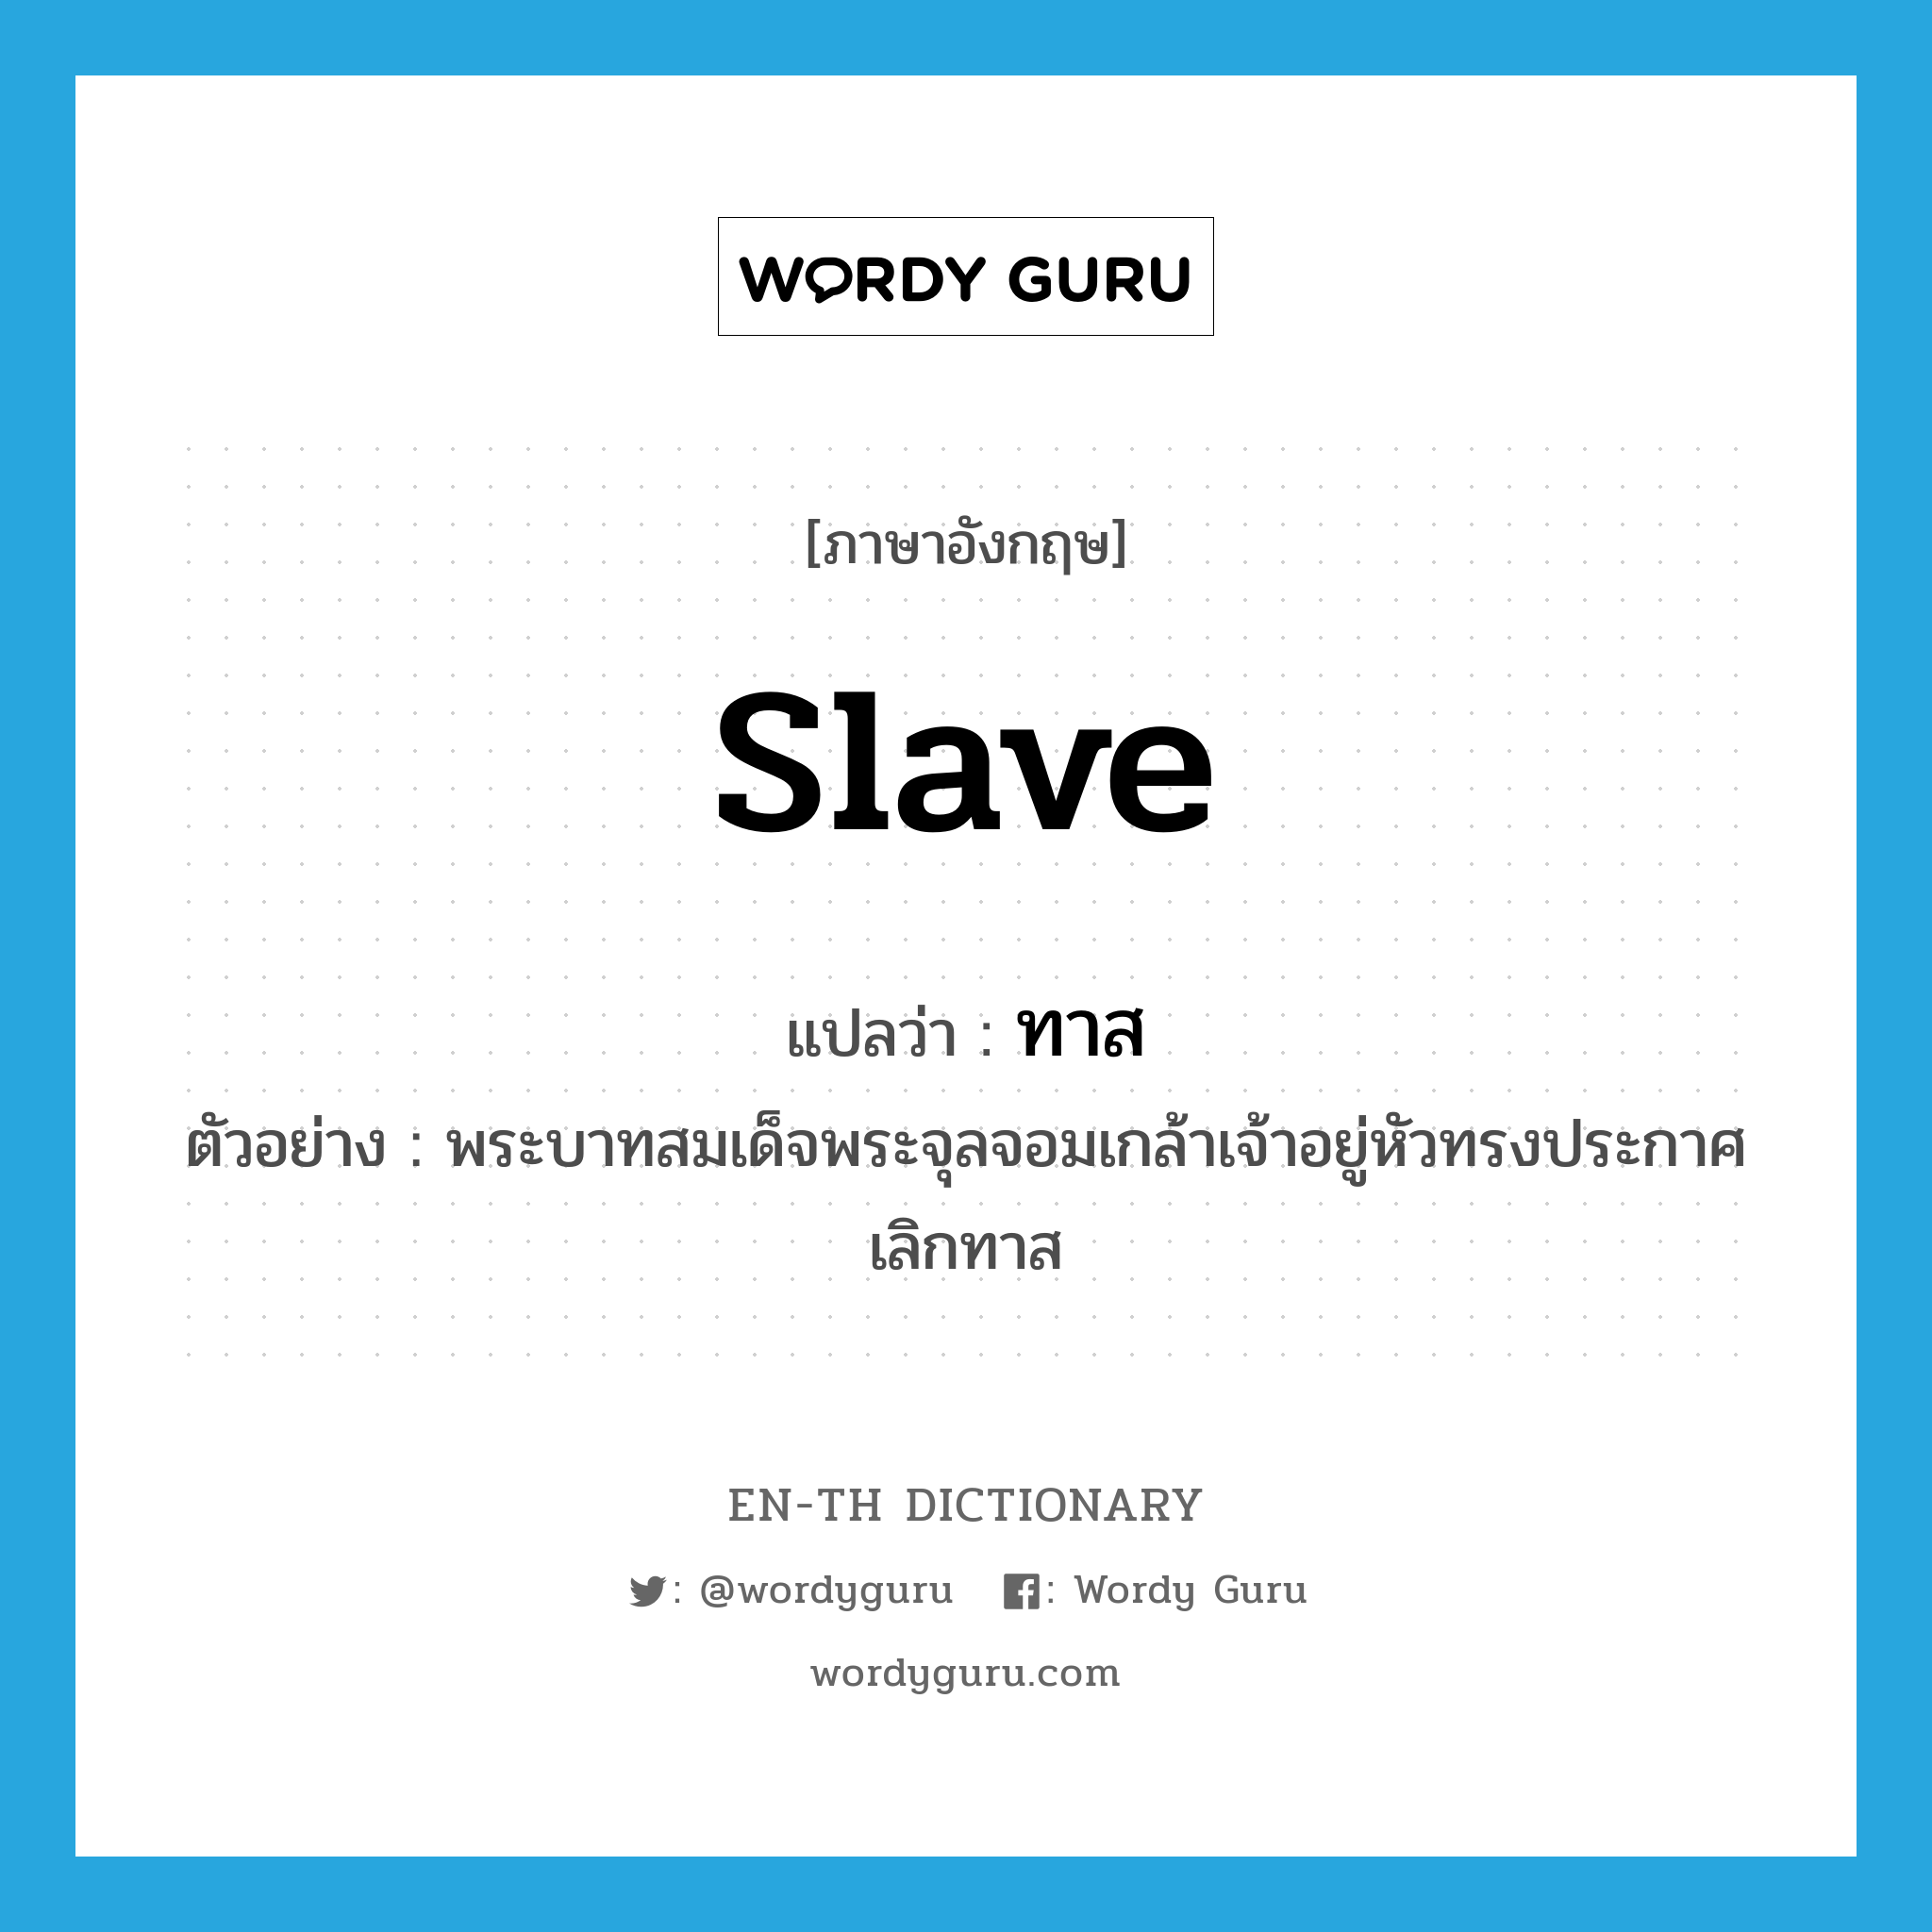 slave แปลว่า?, คำศัพท์ภาษาอังกฤษ slave แปลว่า ทาส ประเภท N ตัวอย่าง พระบาทสมเด็จพระจุลจอมเกล้าเจ้าอยู่หัวทรงประกาศเลิกทาส หมวด N